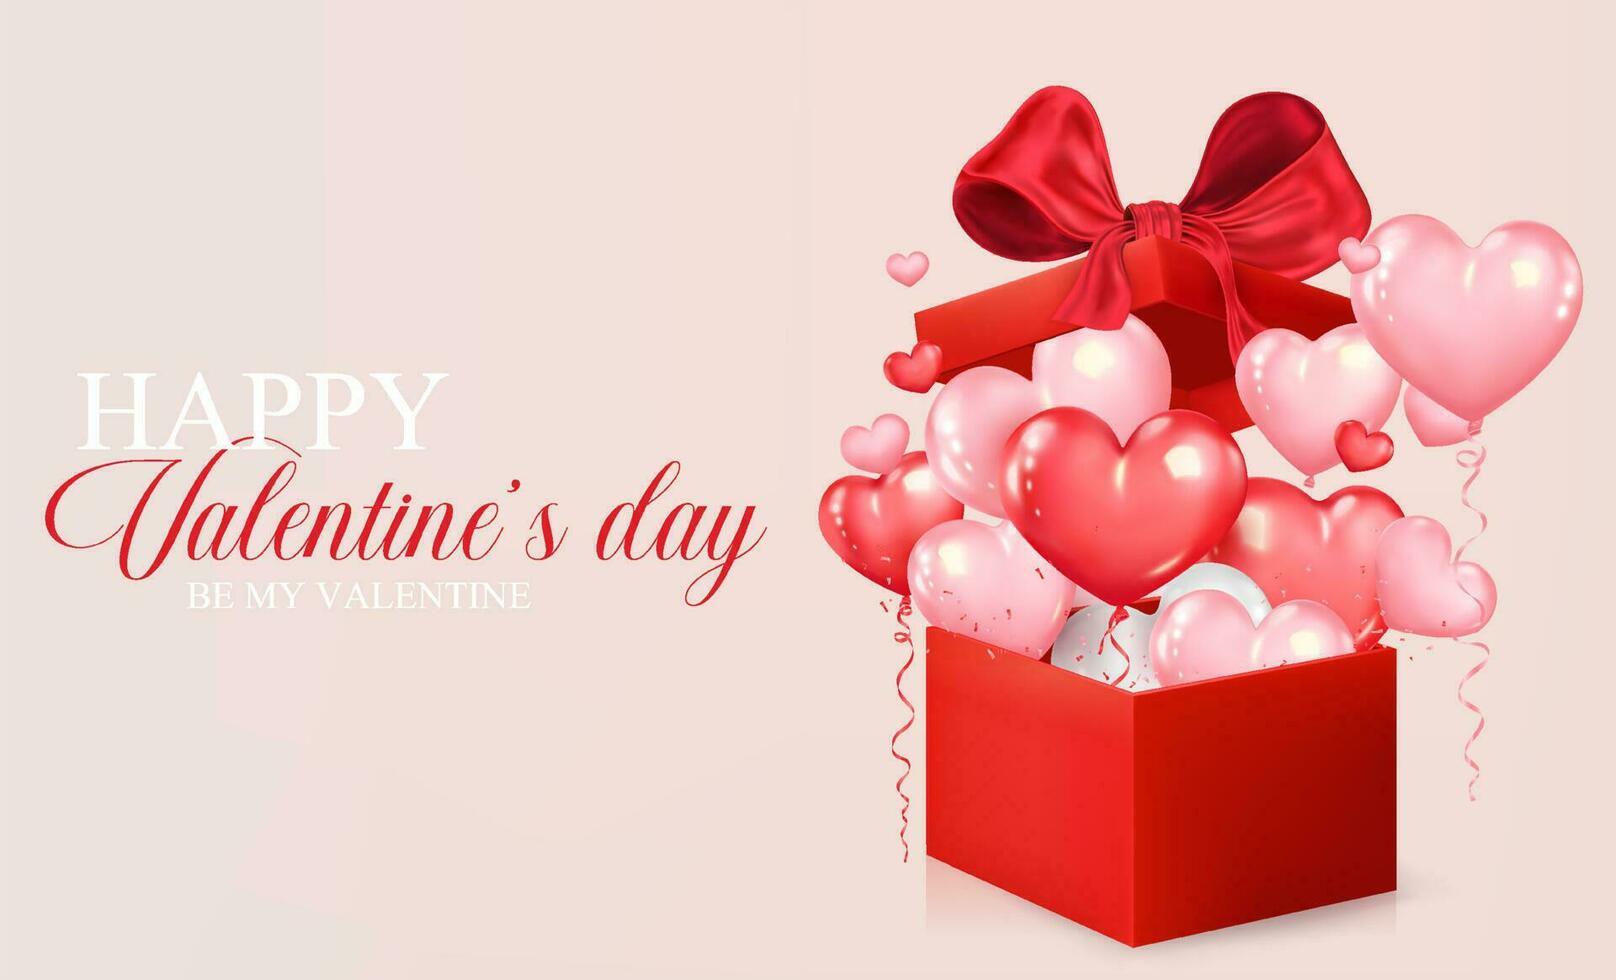 Valentijnsdag dag concept achtergrond. realistisch hart vormig ballonnen vlieg uit van rood geschenk doos. romantisch ontwerp voor omslag, partij, affiches, groet kaart, Promotie spandoek. vector illustratie